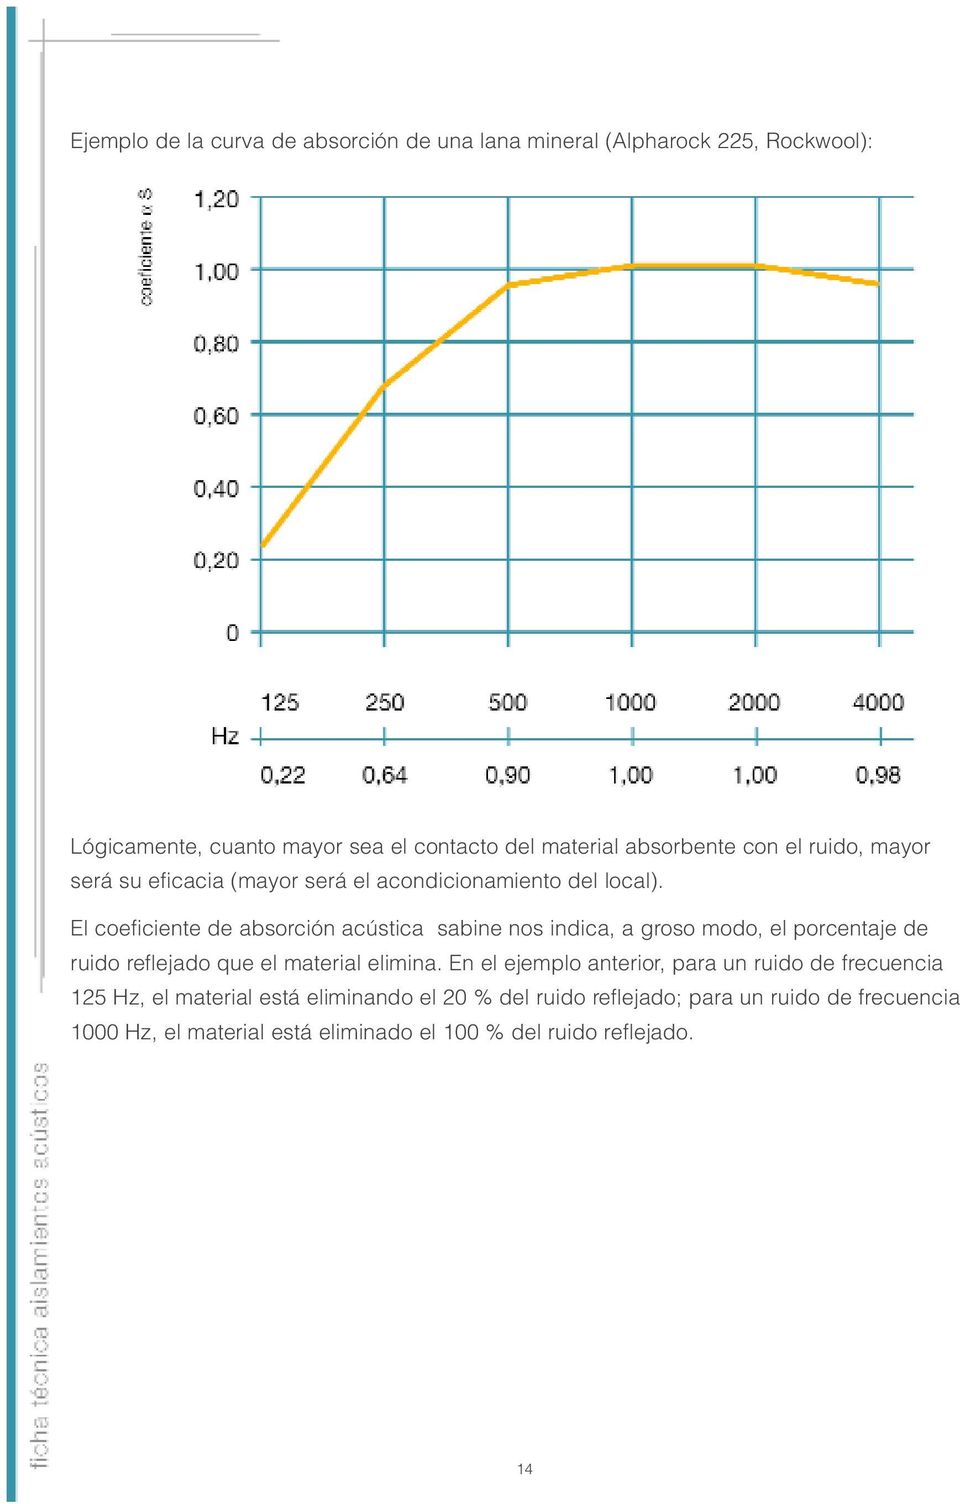 El coeficiente de absorción acústica sabine nos indica, a groso modo, el porcentaje de ruido reflejado que el material elimina.